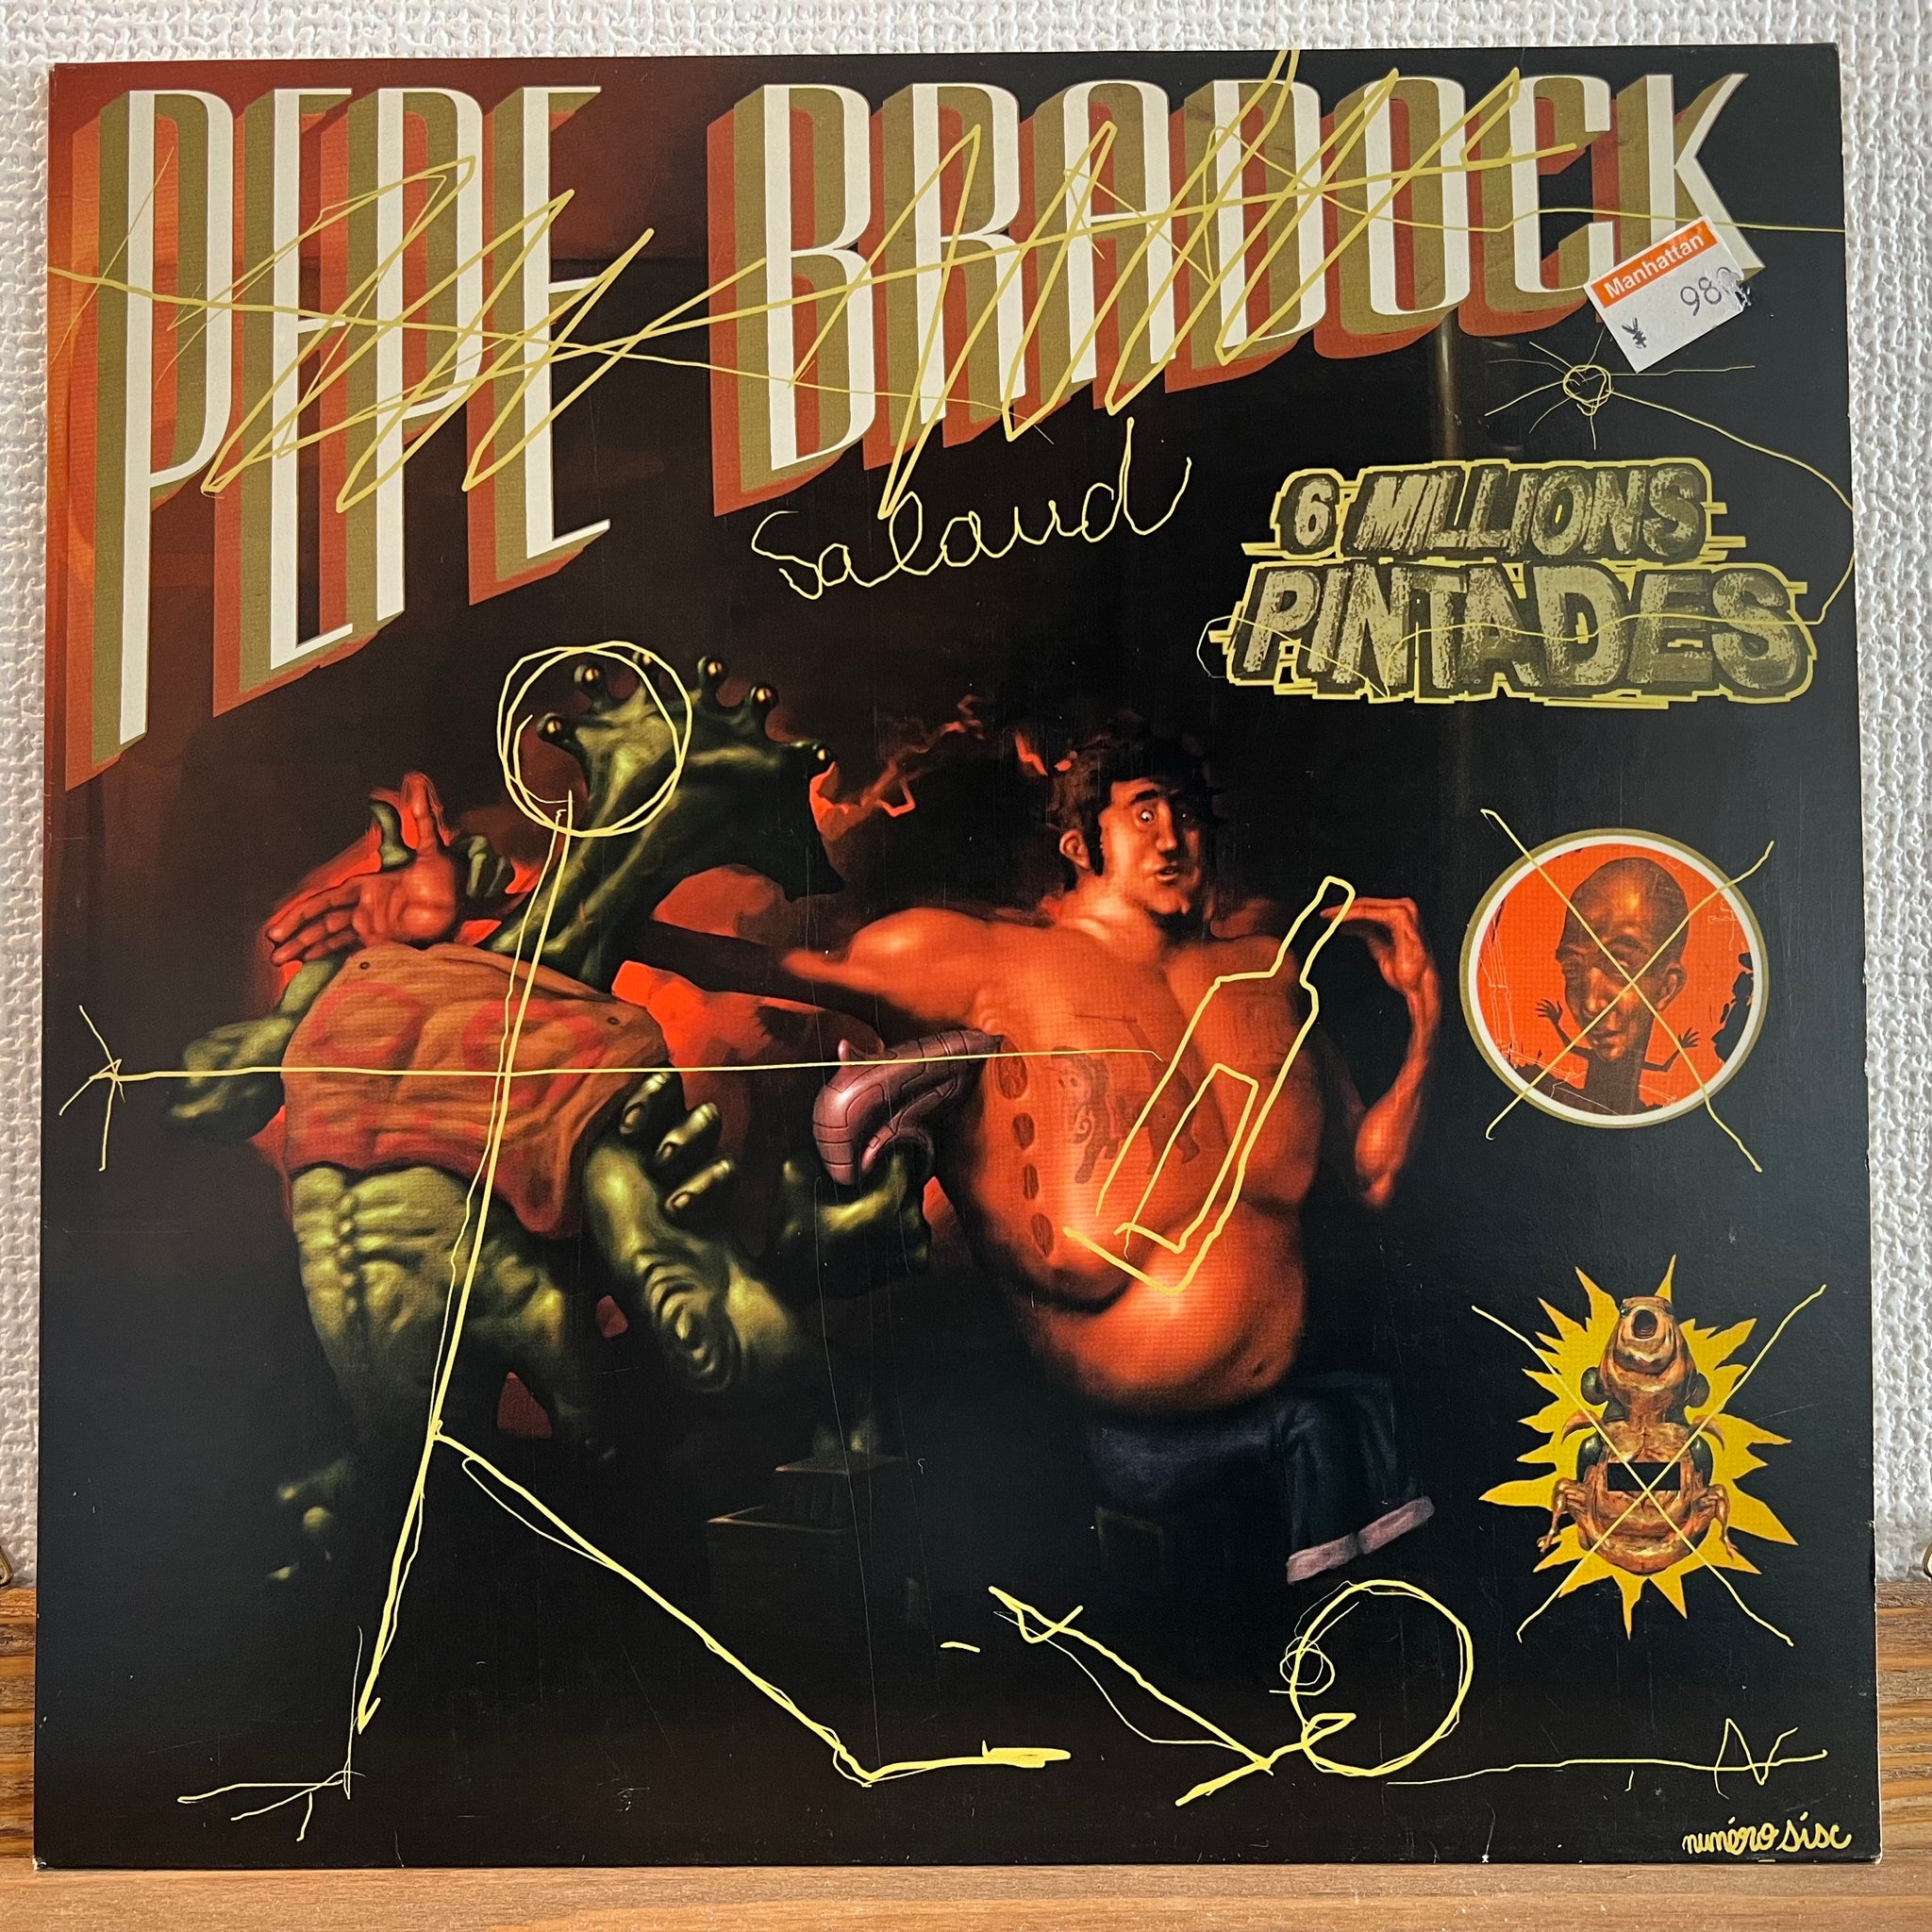 Pépé Bradock - 6 Millions Pintades EP